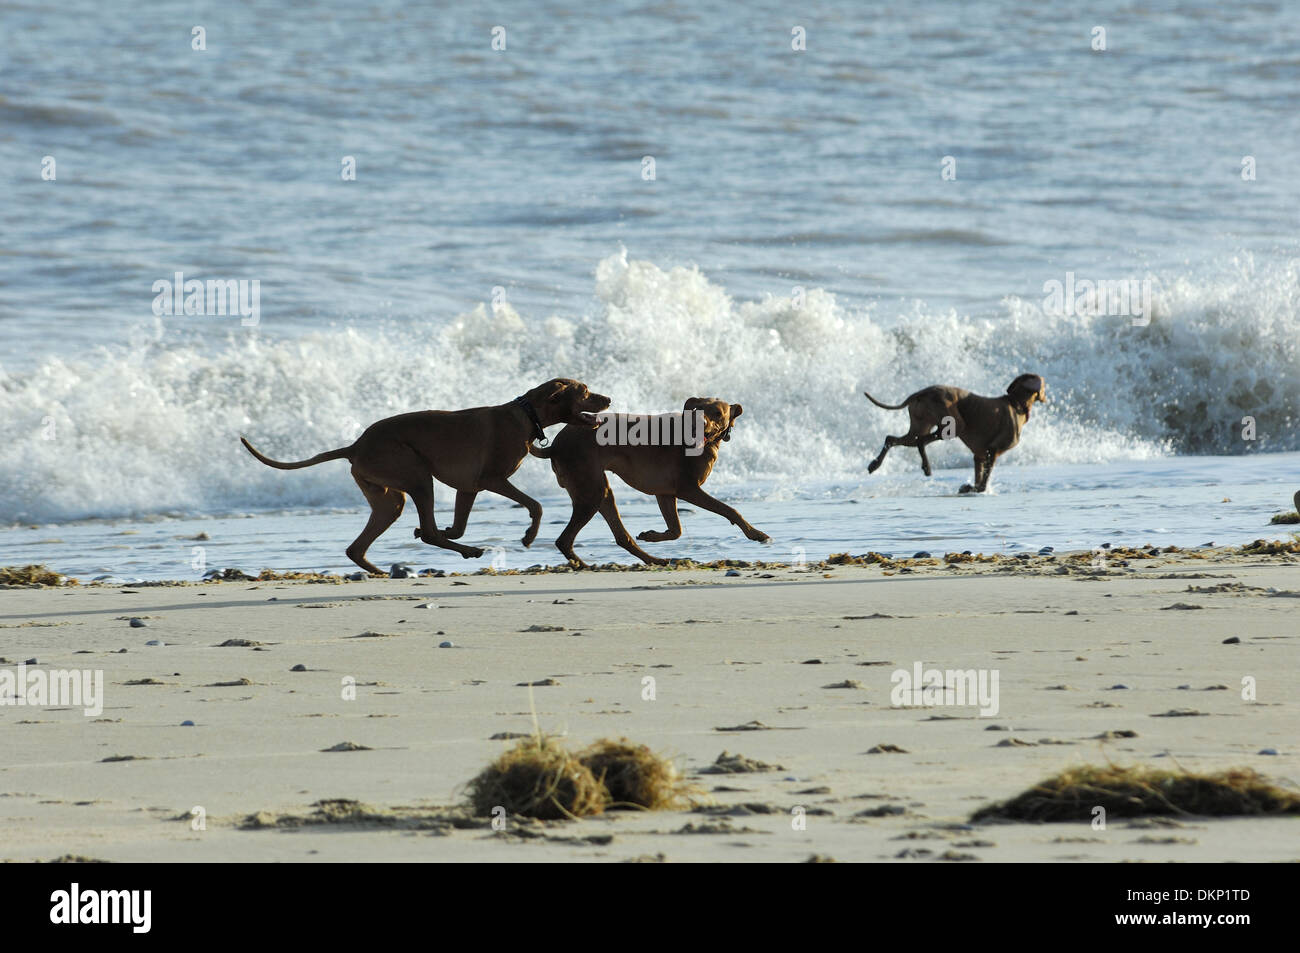 Three Pointer dogs running on a sandy beach, Winterton-On-Sea, Norfolk, England Stock Photo